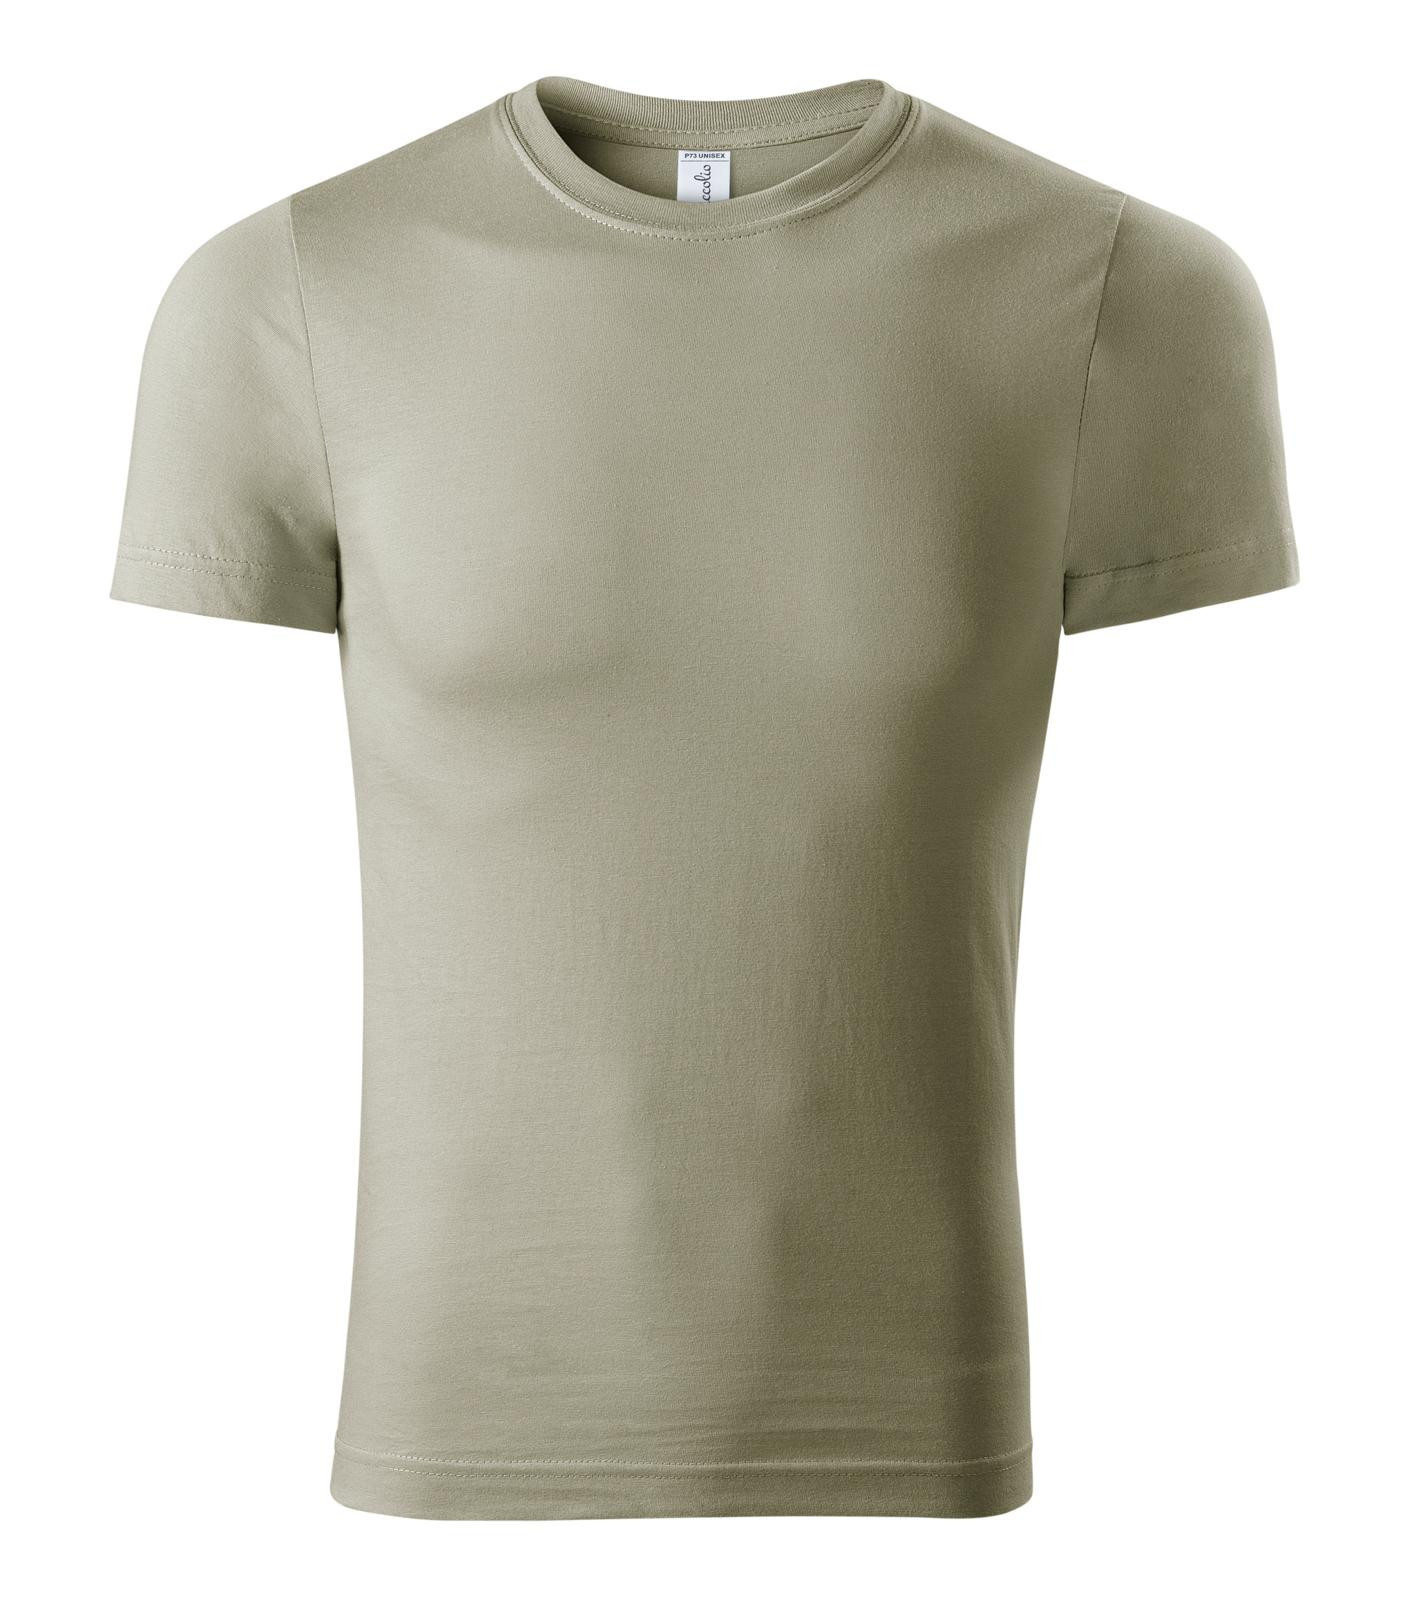 Unisex tričko Piccolio Paint P73 - veľkosť: M, farba: khaki svetlá